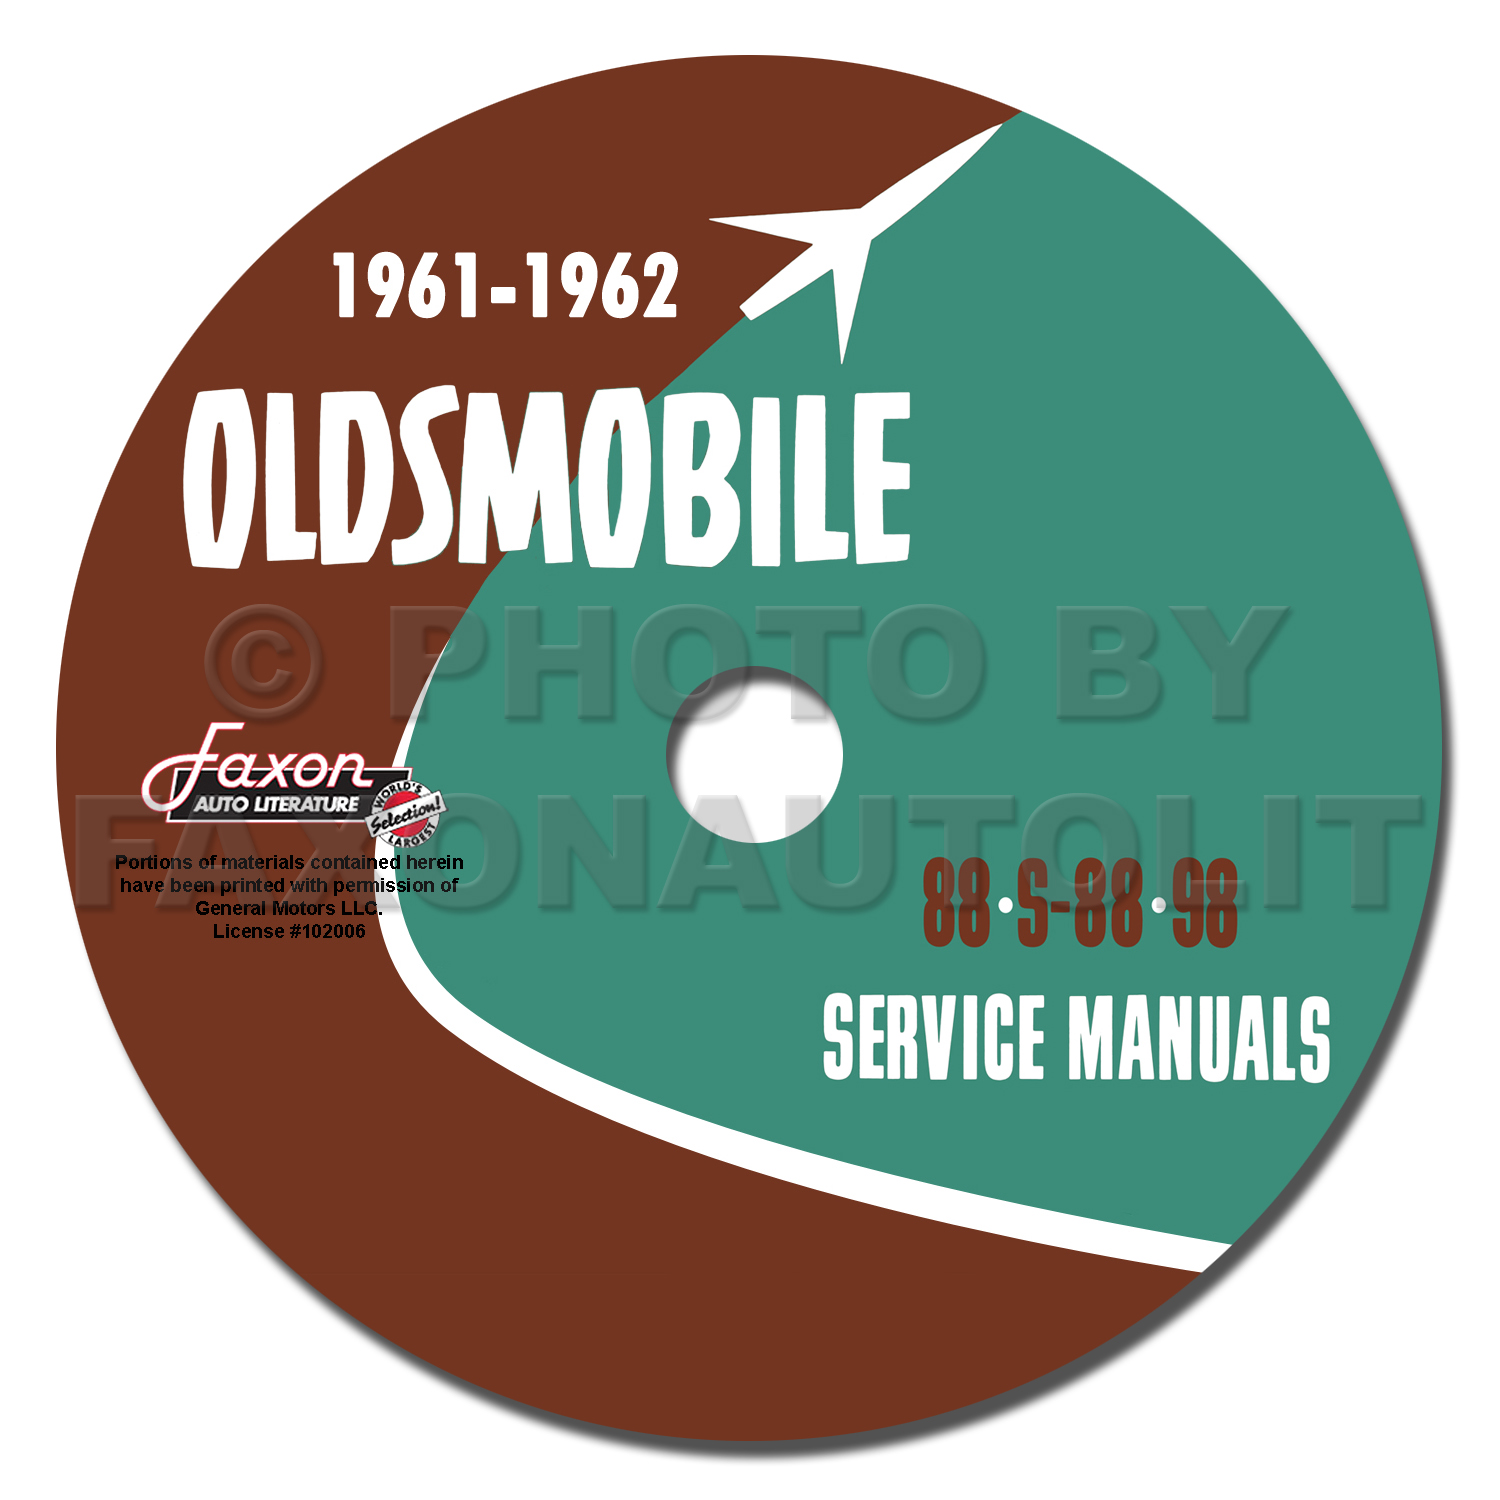 1961-1962 Oldsmobile CD-ROM Shop Manual 